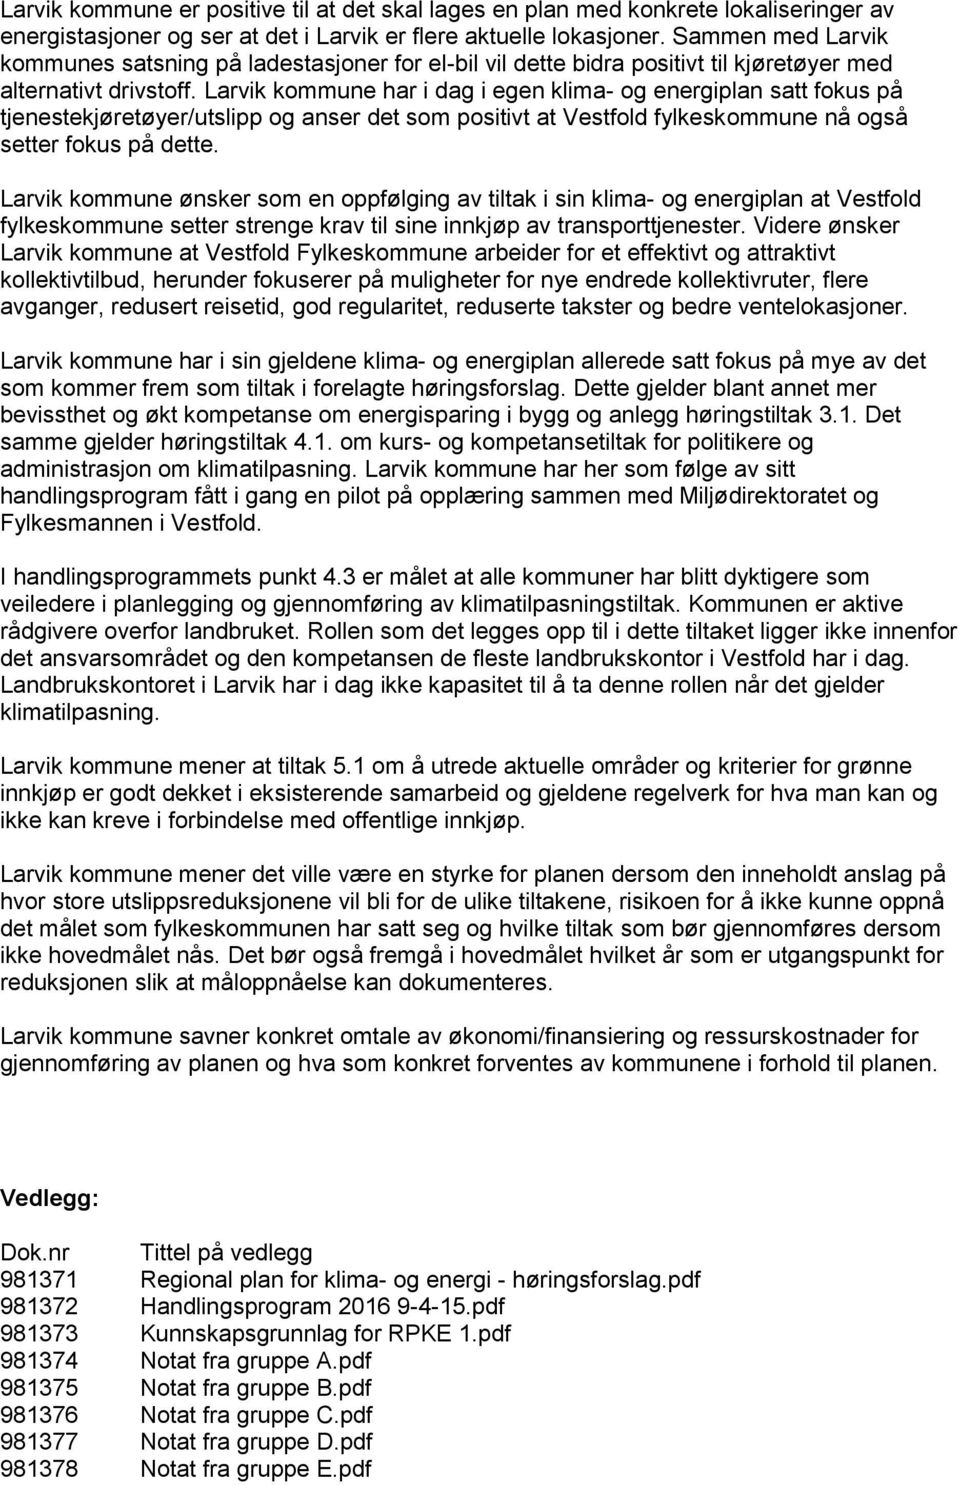 Larvik kommune har i dag i egen klima- og energiplan satt fokus på tjenestekjøretøyer/utslipp og anser det som positivt at Vestfold fylkeskommune nå også setter fokus på dette.